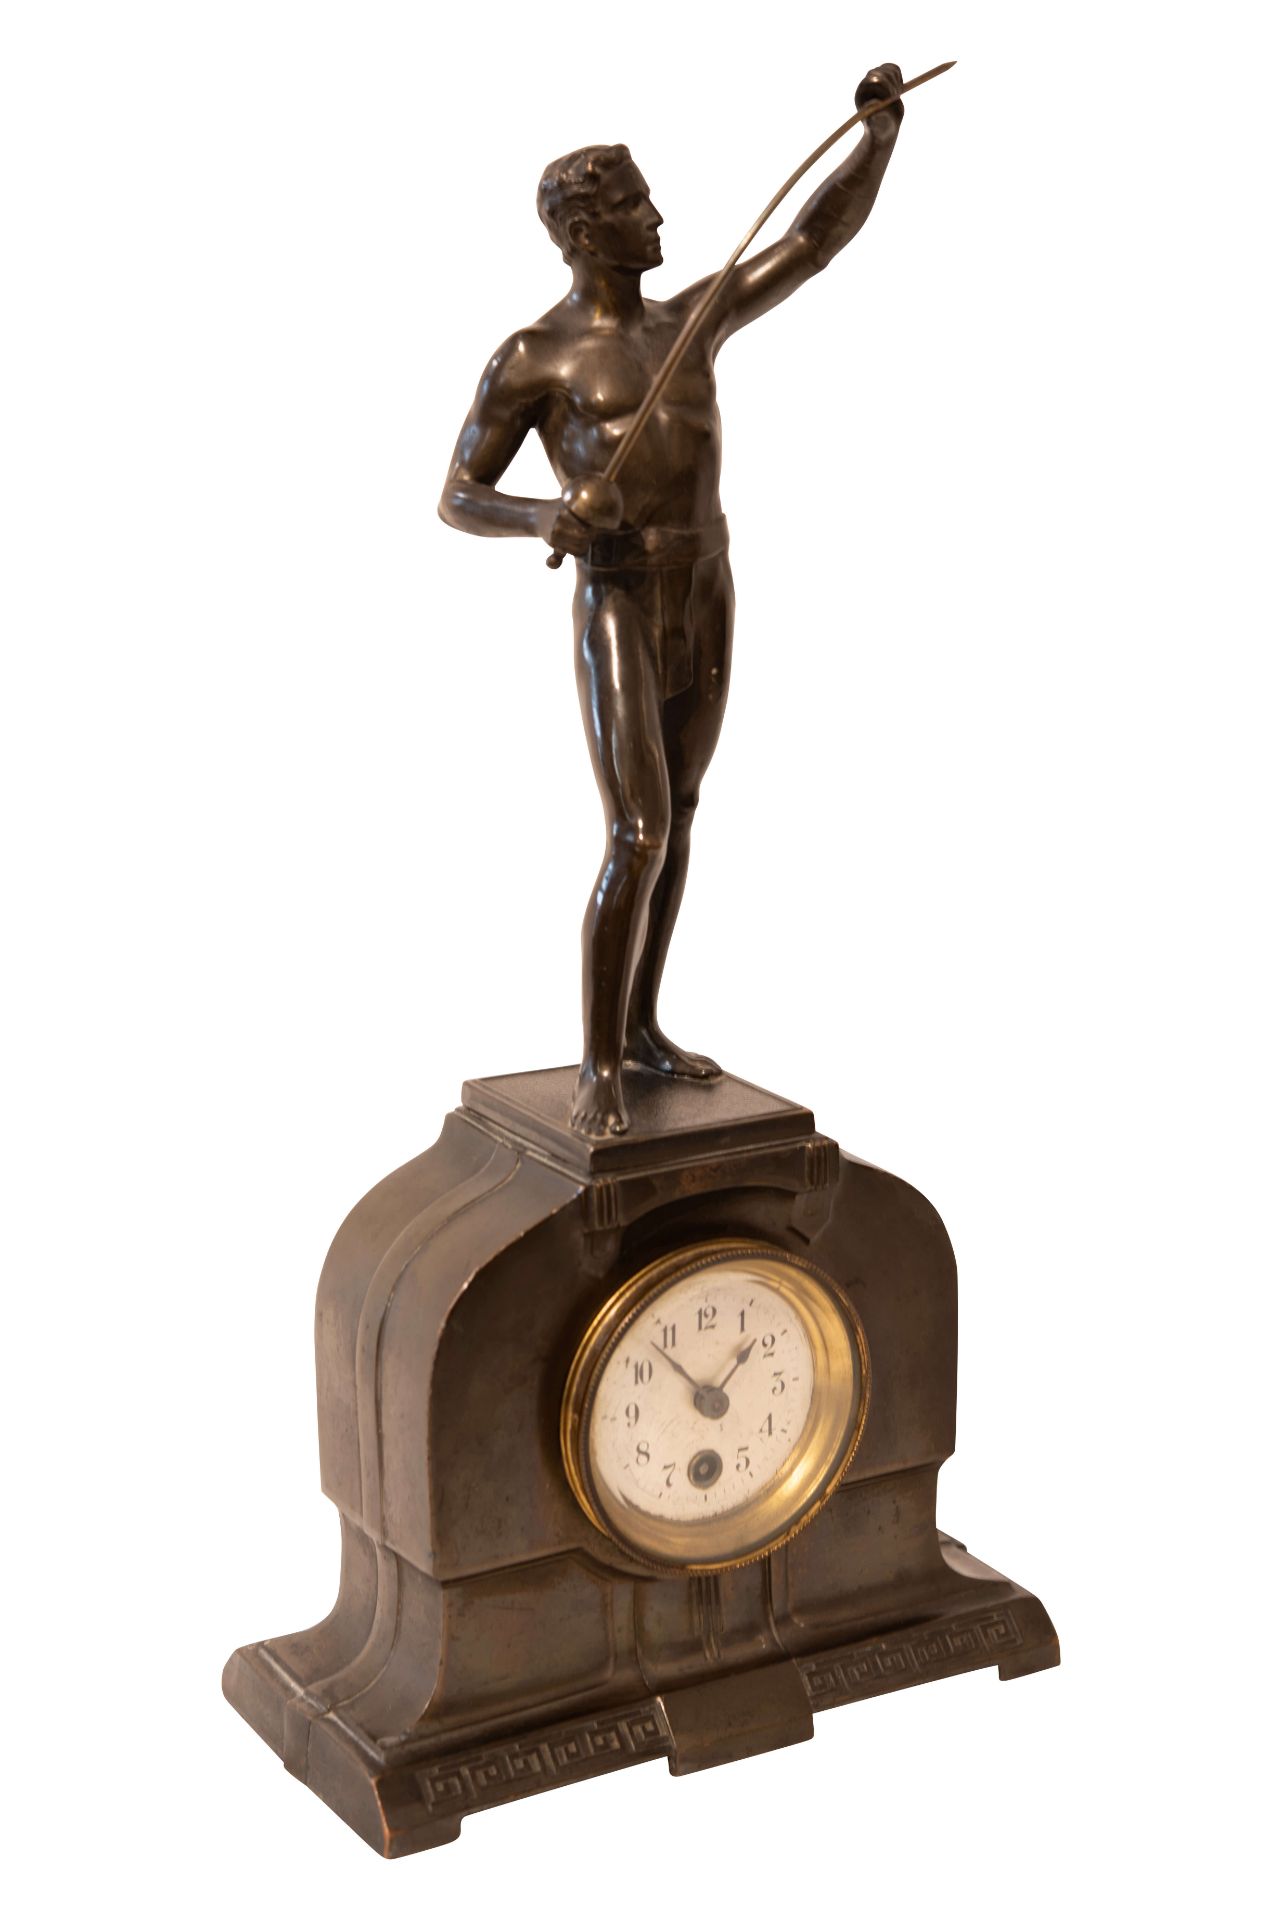 Bronze Uhr mit Figur eines Fechters | Bronze Clock with Figure of a Fencer